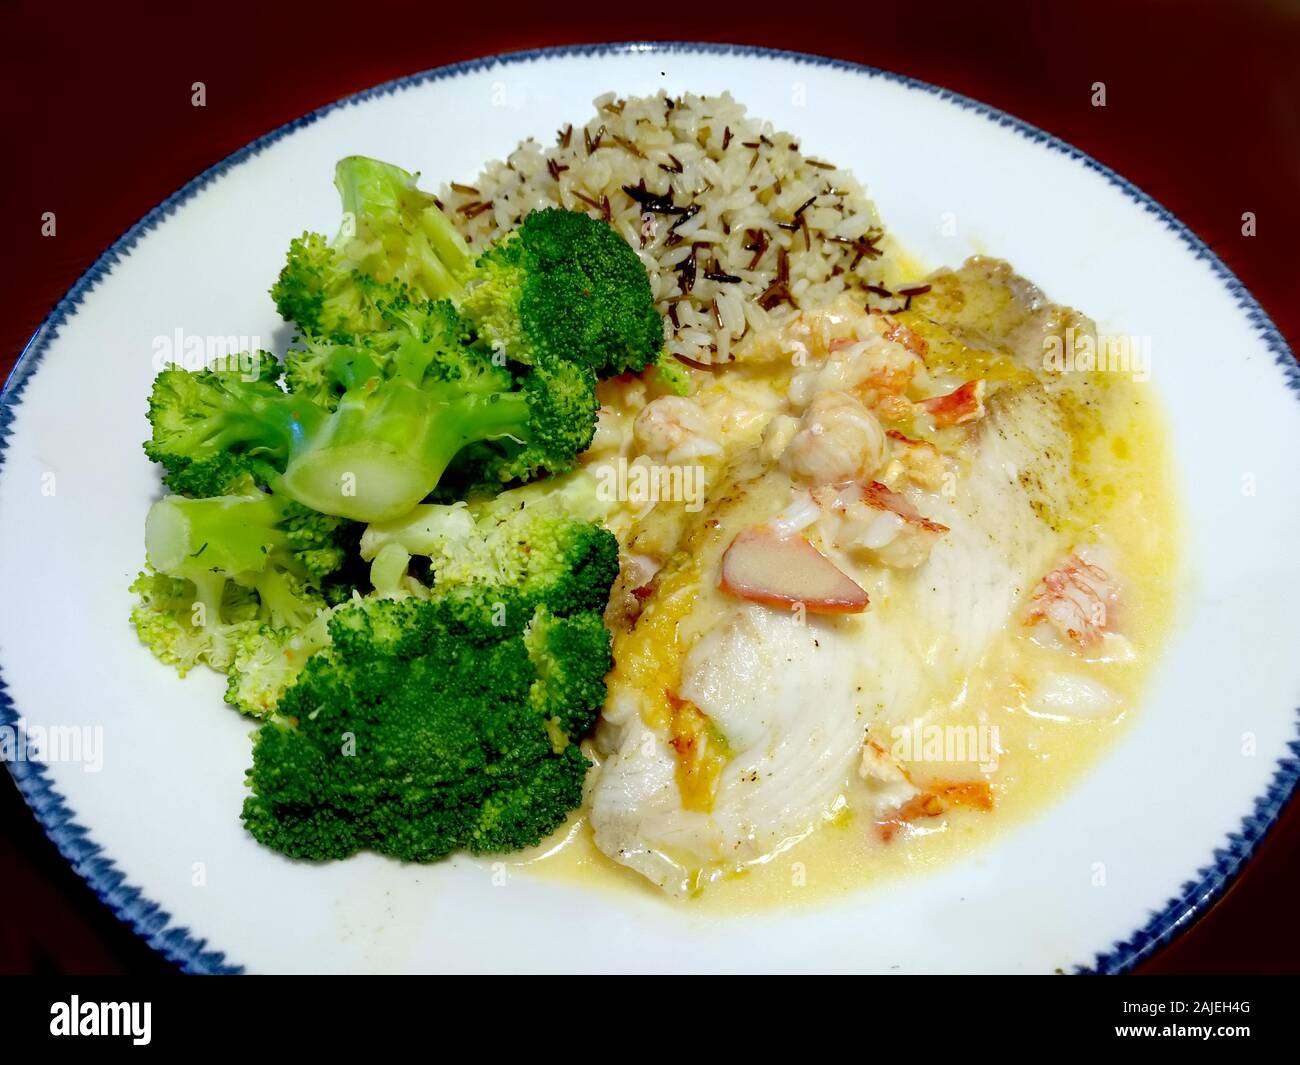 Dîner de fruits de mer sains avec un filet de cabillaud garni de crabe et sauce au beurre à l'ail et au citron, riz pilaf et brocoli vapeur Banque D'Images